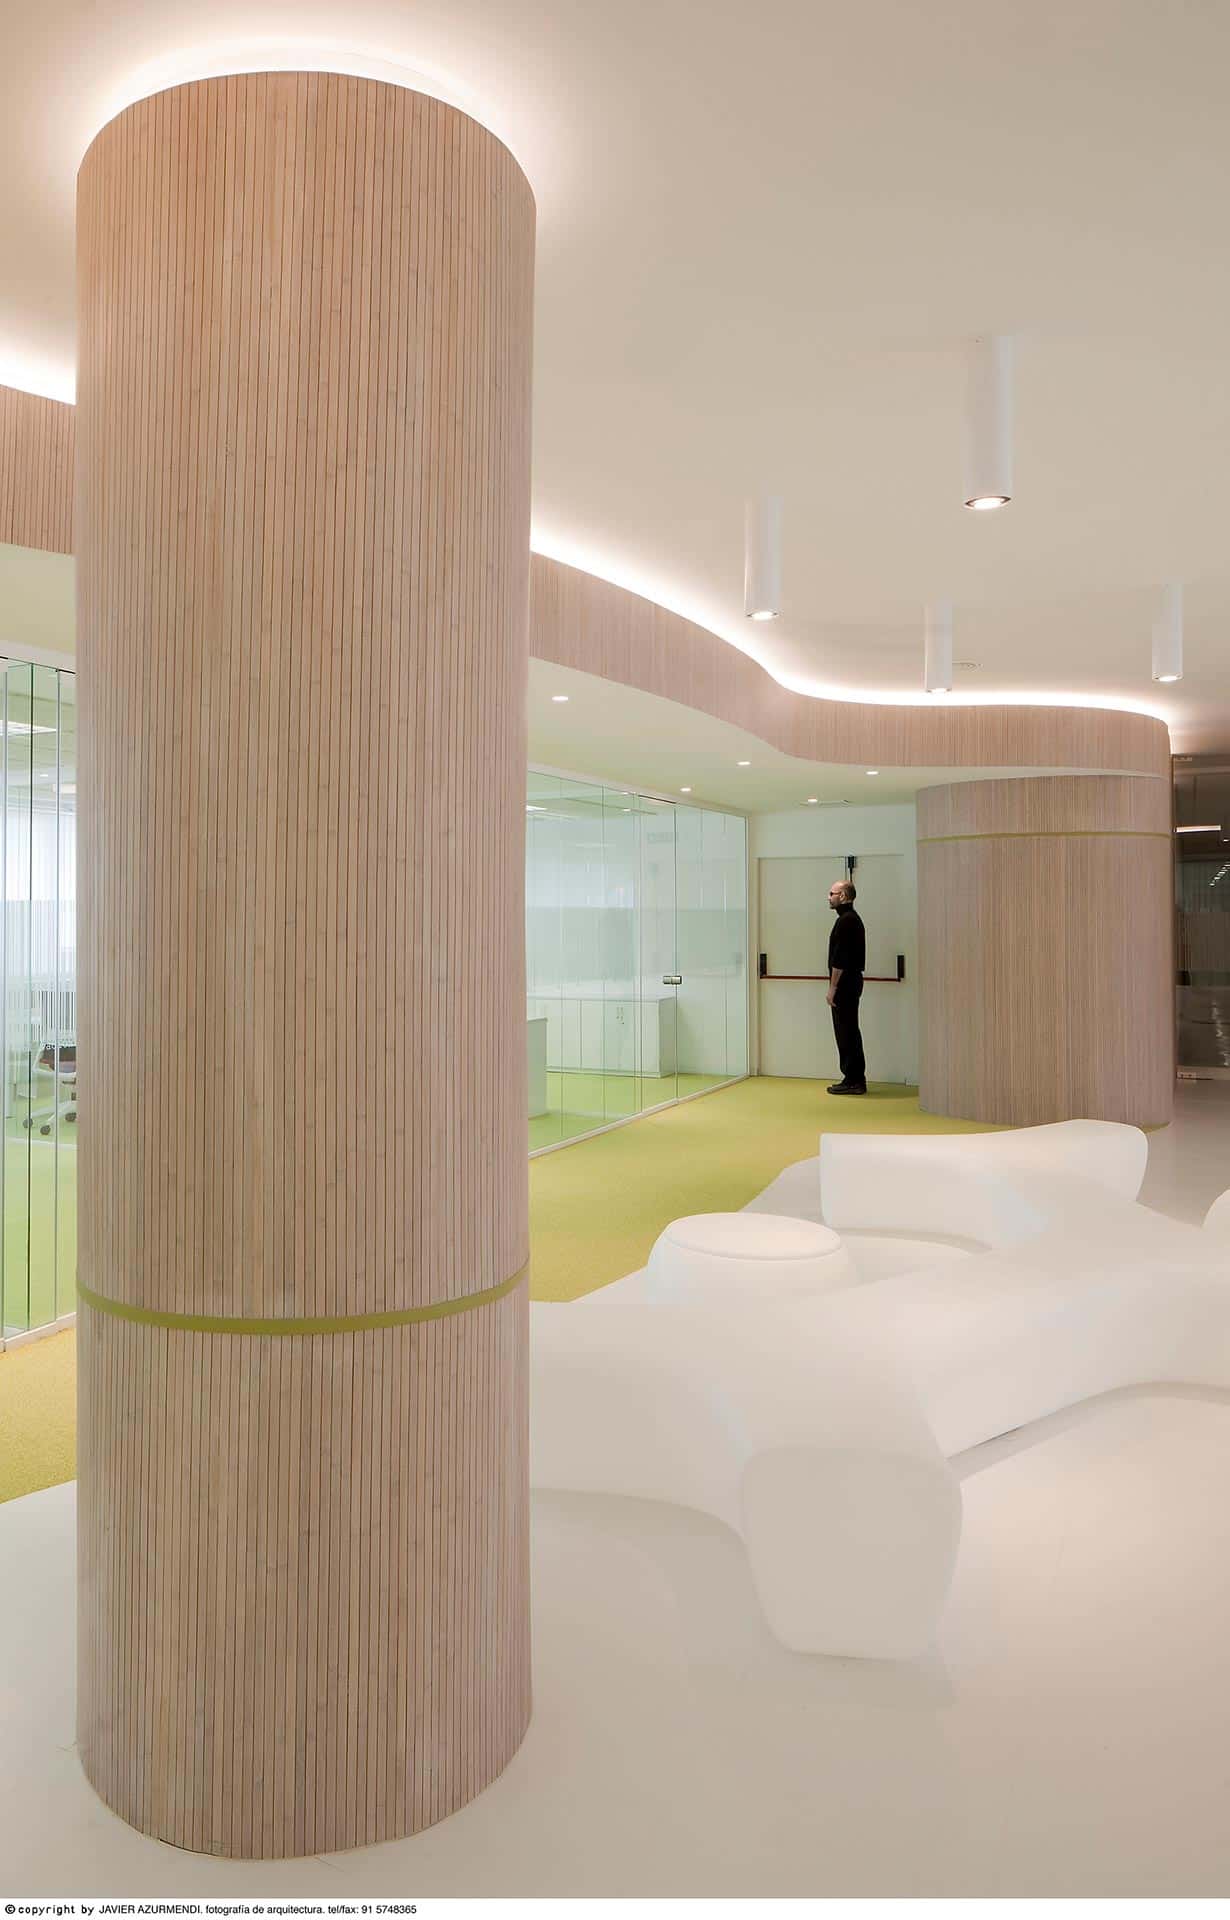 Columna de madera y suelo blanco de la reforma interior de oficina diseñada por Moah Arquitectos en Cantabria